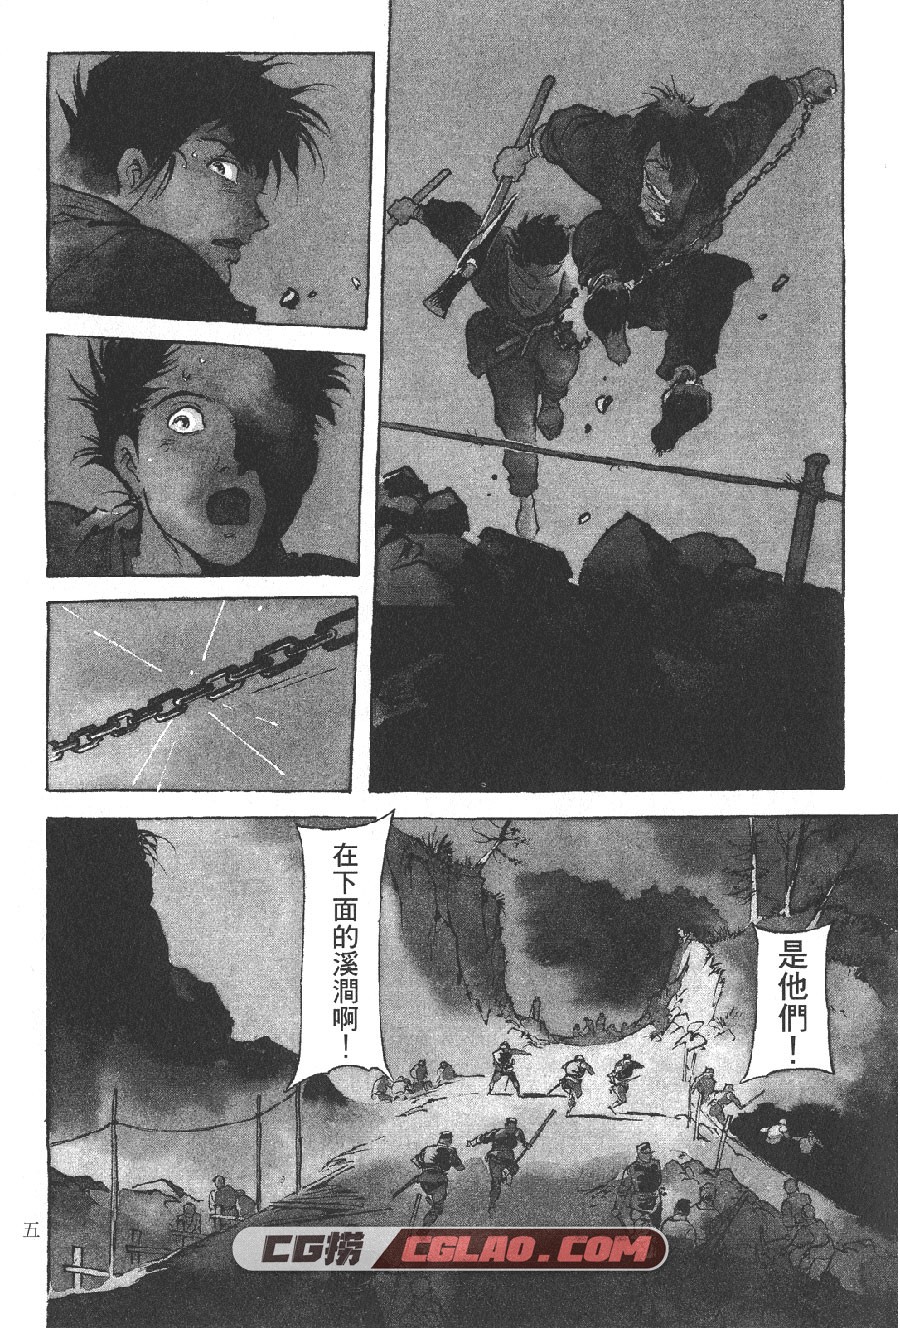 王道之狗 安彦良和 1-6卷 漫画完结下载 百度网盘下载,D01_005.jpg